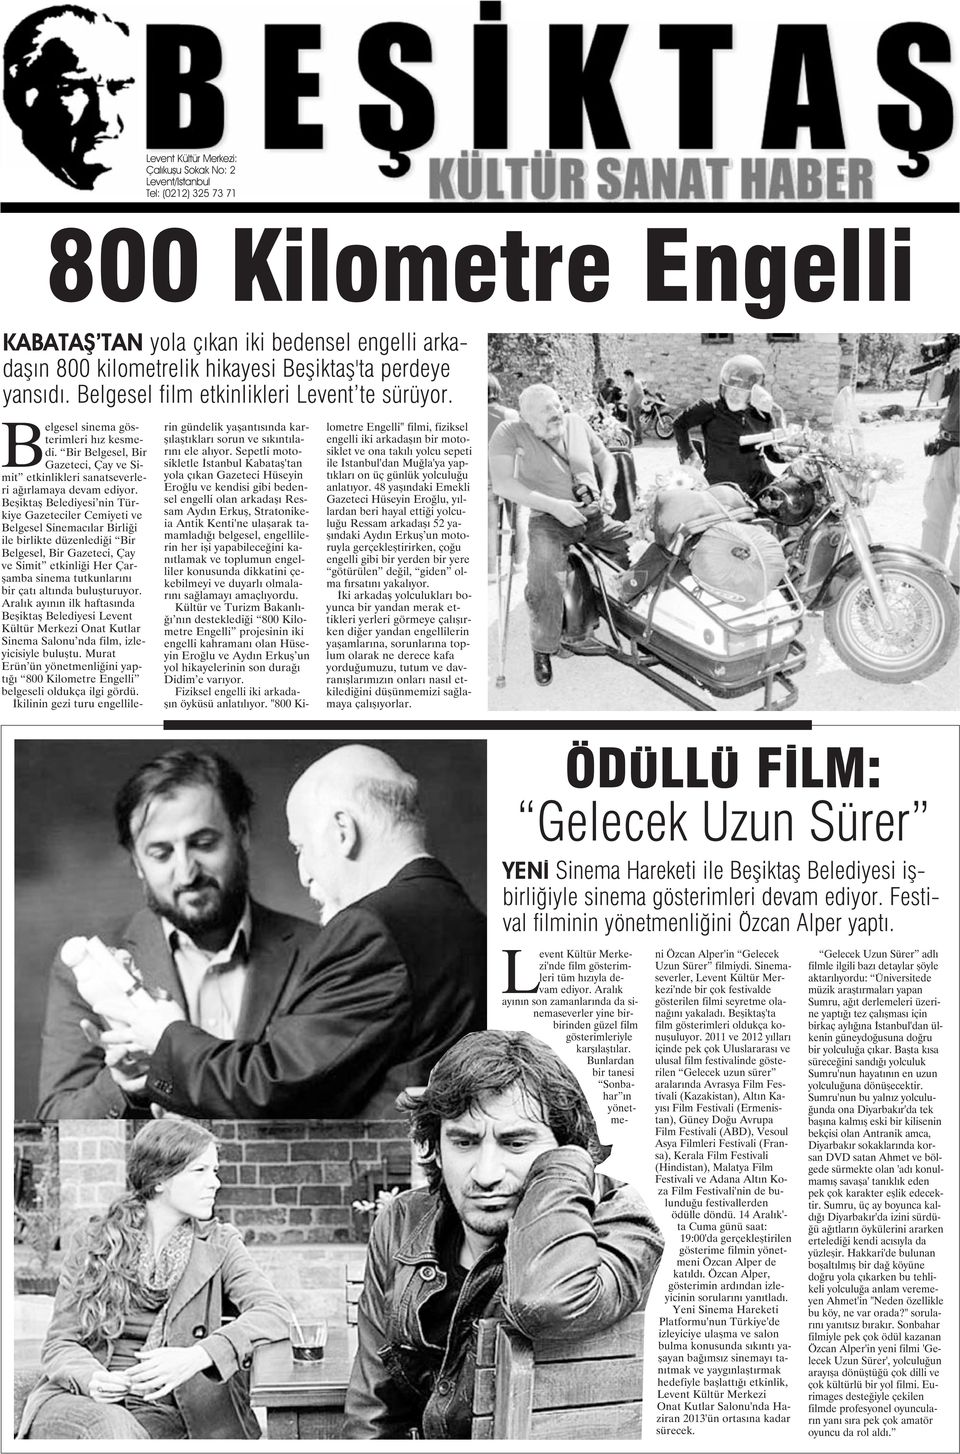 Beşiktaş Belediyesi nin Türkiye Gazeteciler Cemiyeti ve Belgesel Sinemacılar Birliği ile birlikte düzenlediği Bir Belgesel, Bir Gazeteci, Çay ve Simit etkinliği Her Çarşamba sinema tutkunlarını bir